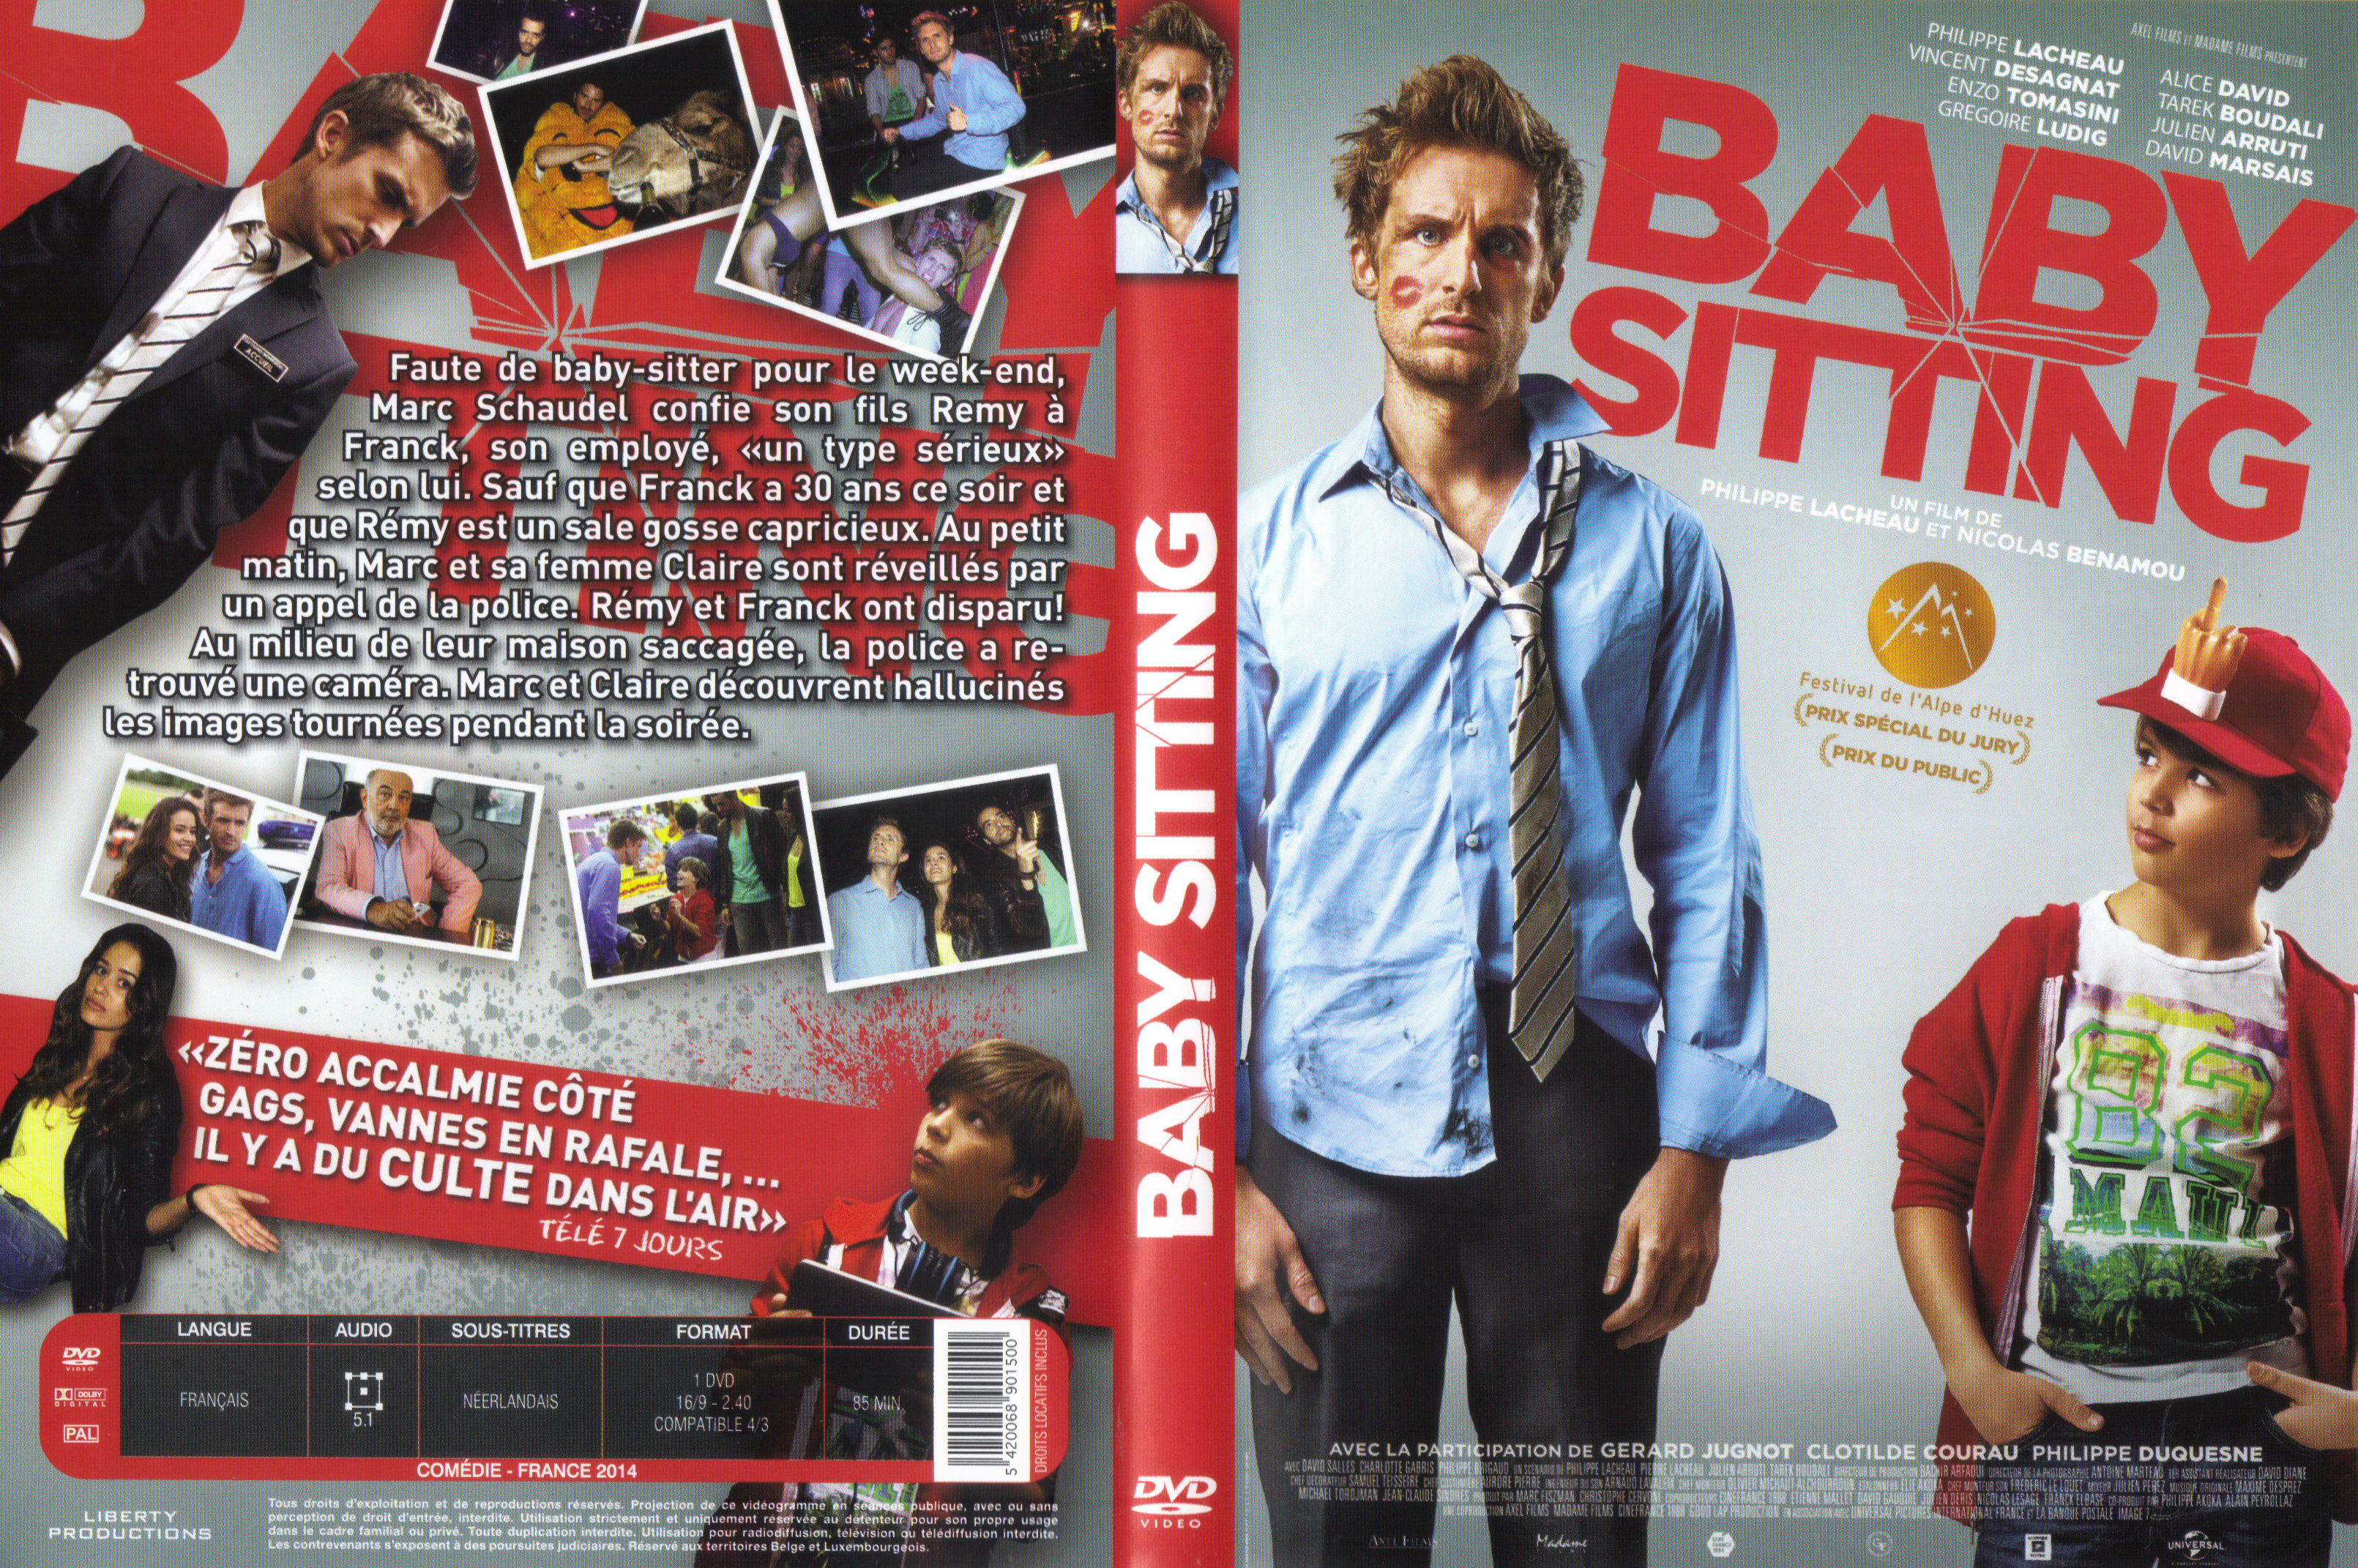 Jaquette DVD Babysitting v2